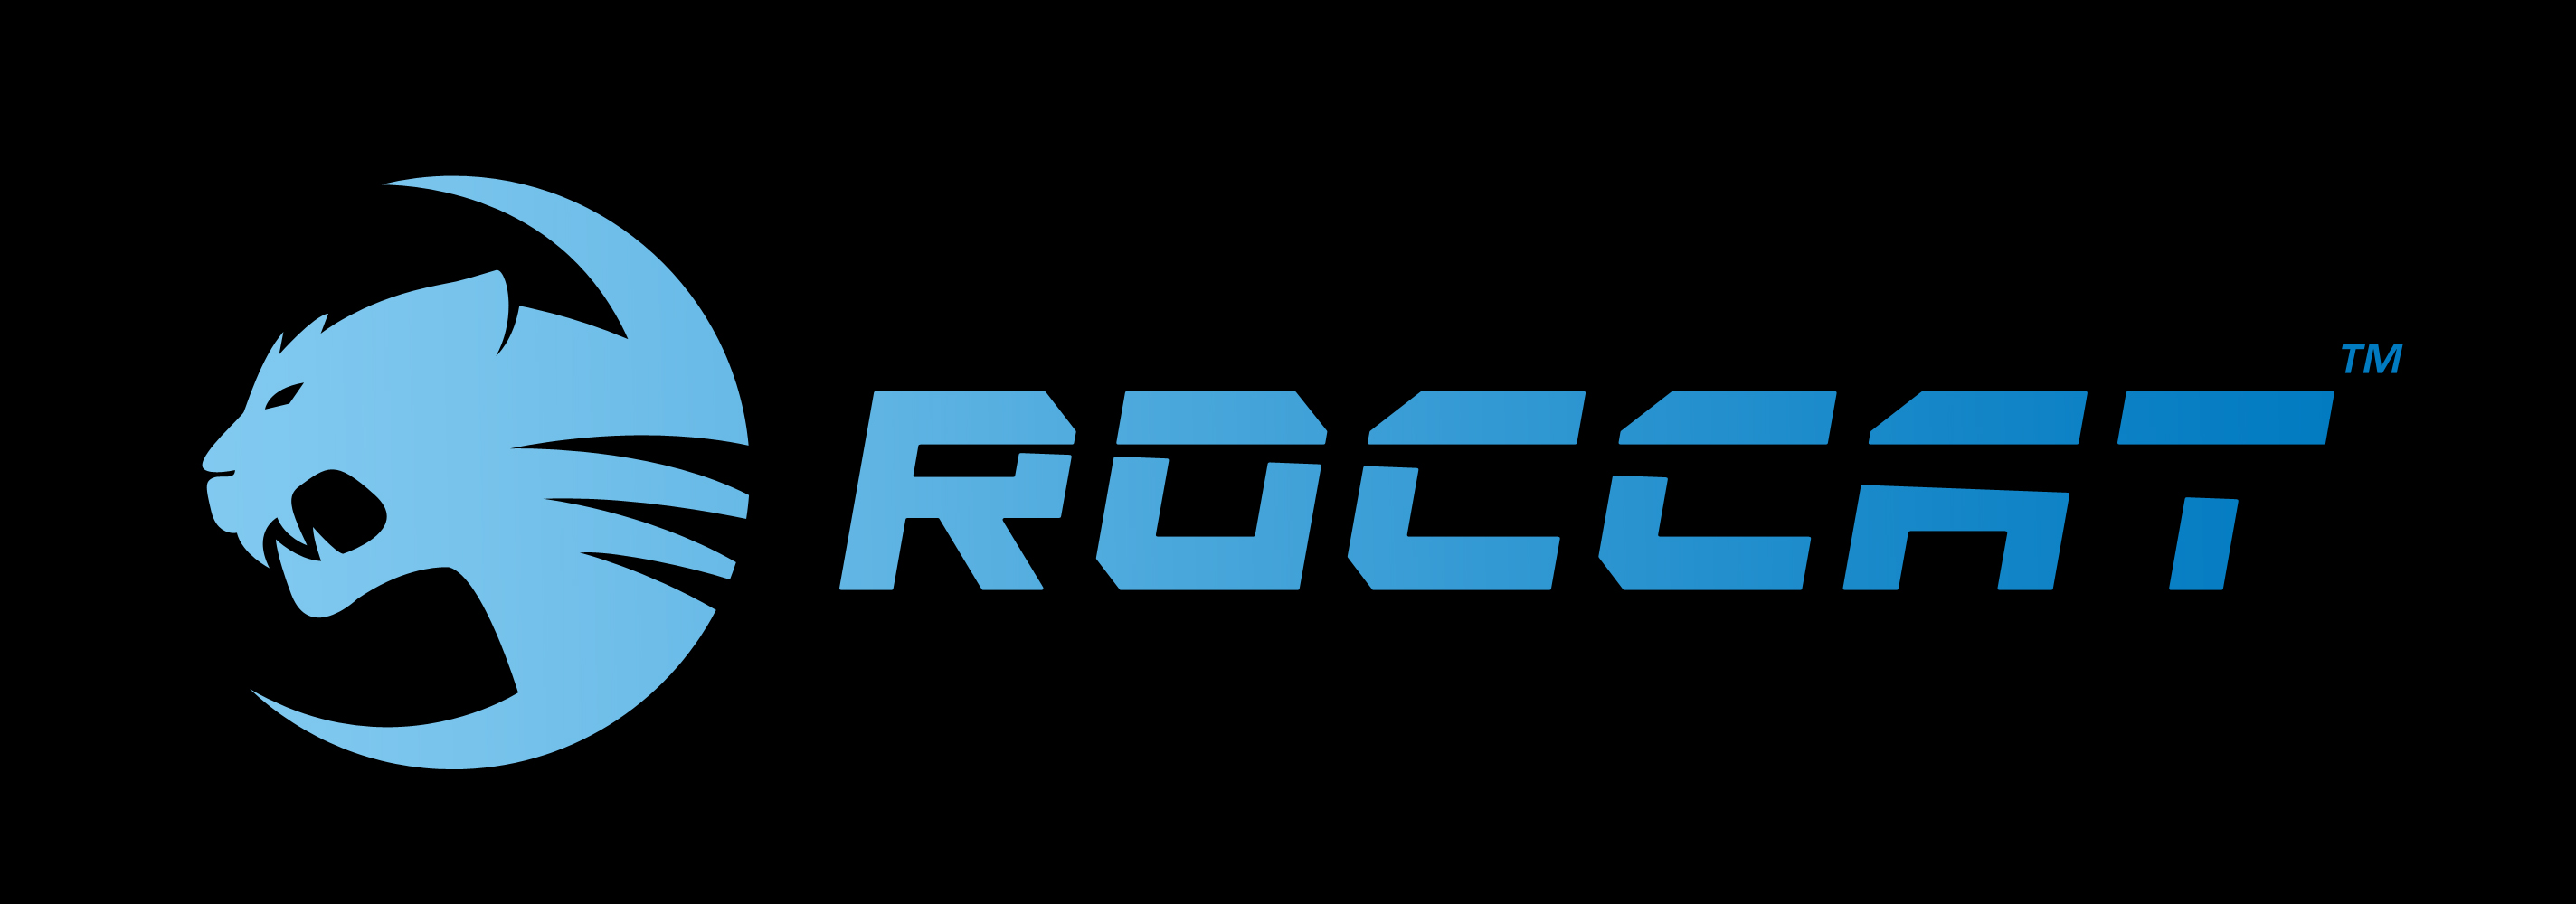 Roccat - sprrawdź wszystkie promocje